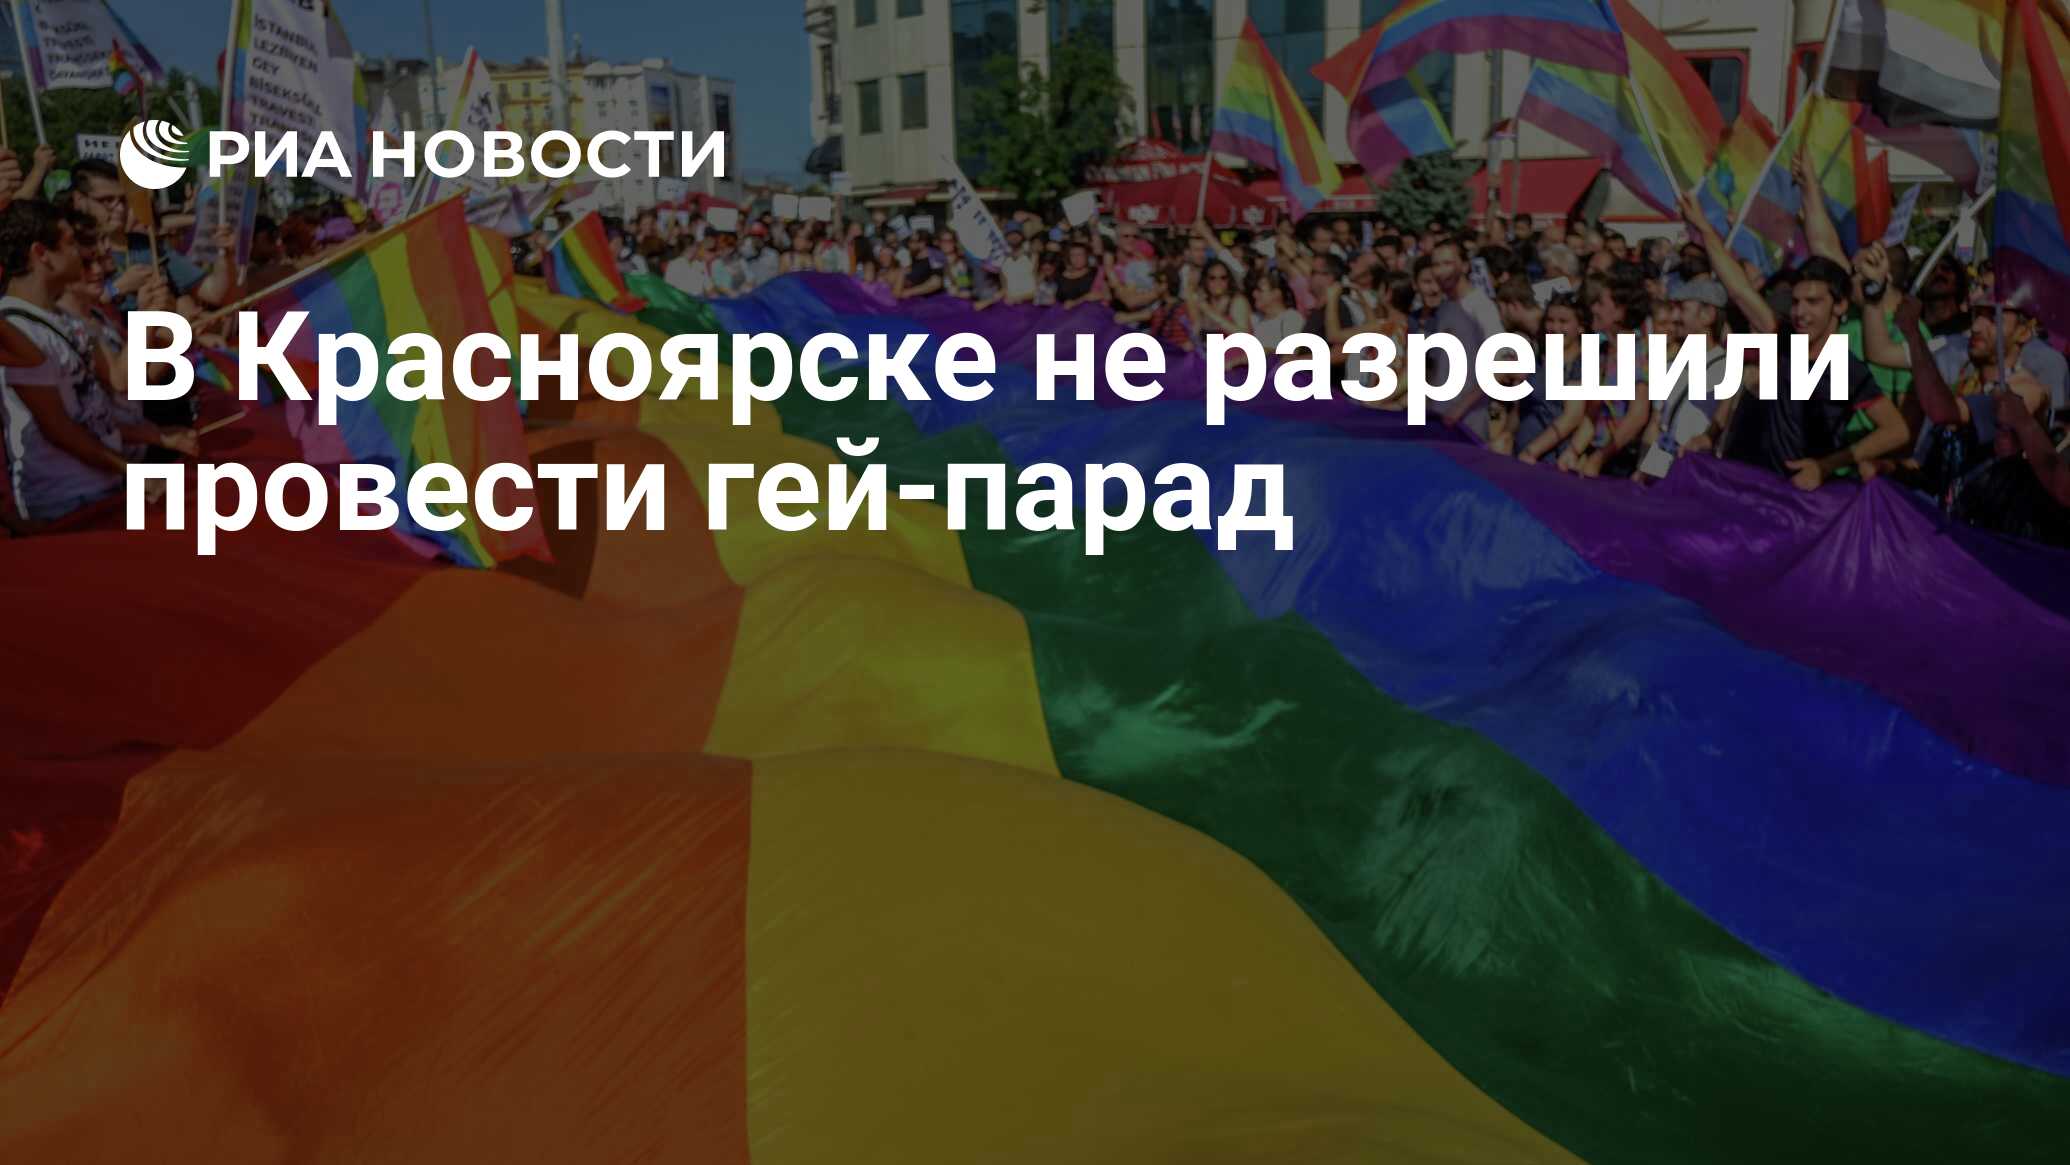 В Красноярске не разрешили провести гей-парад - РИА Новости, 15.03.2021